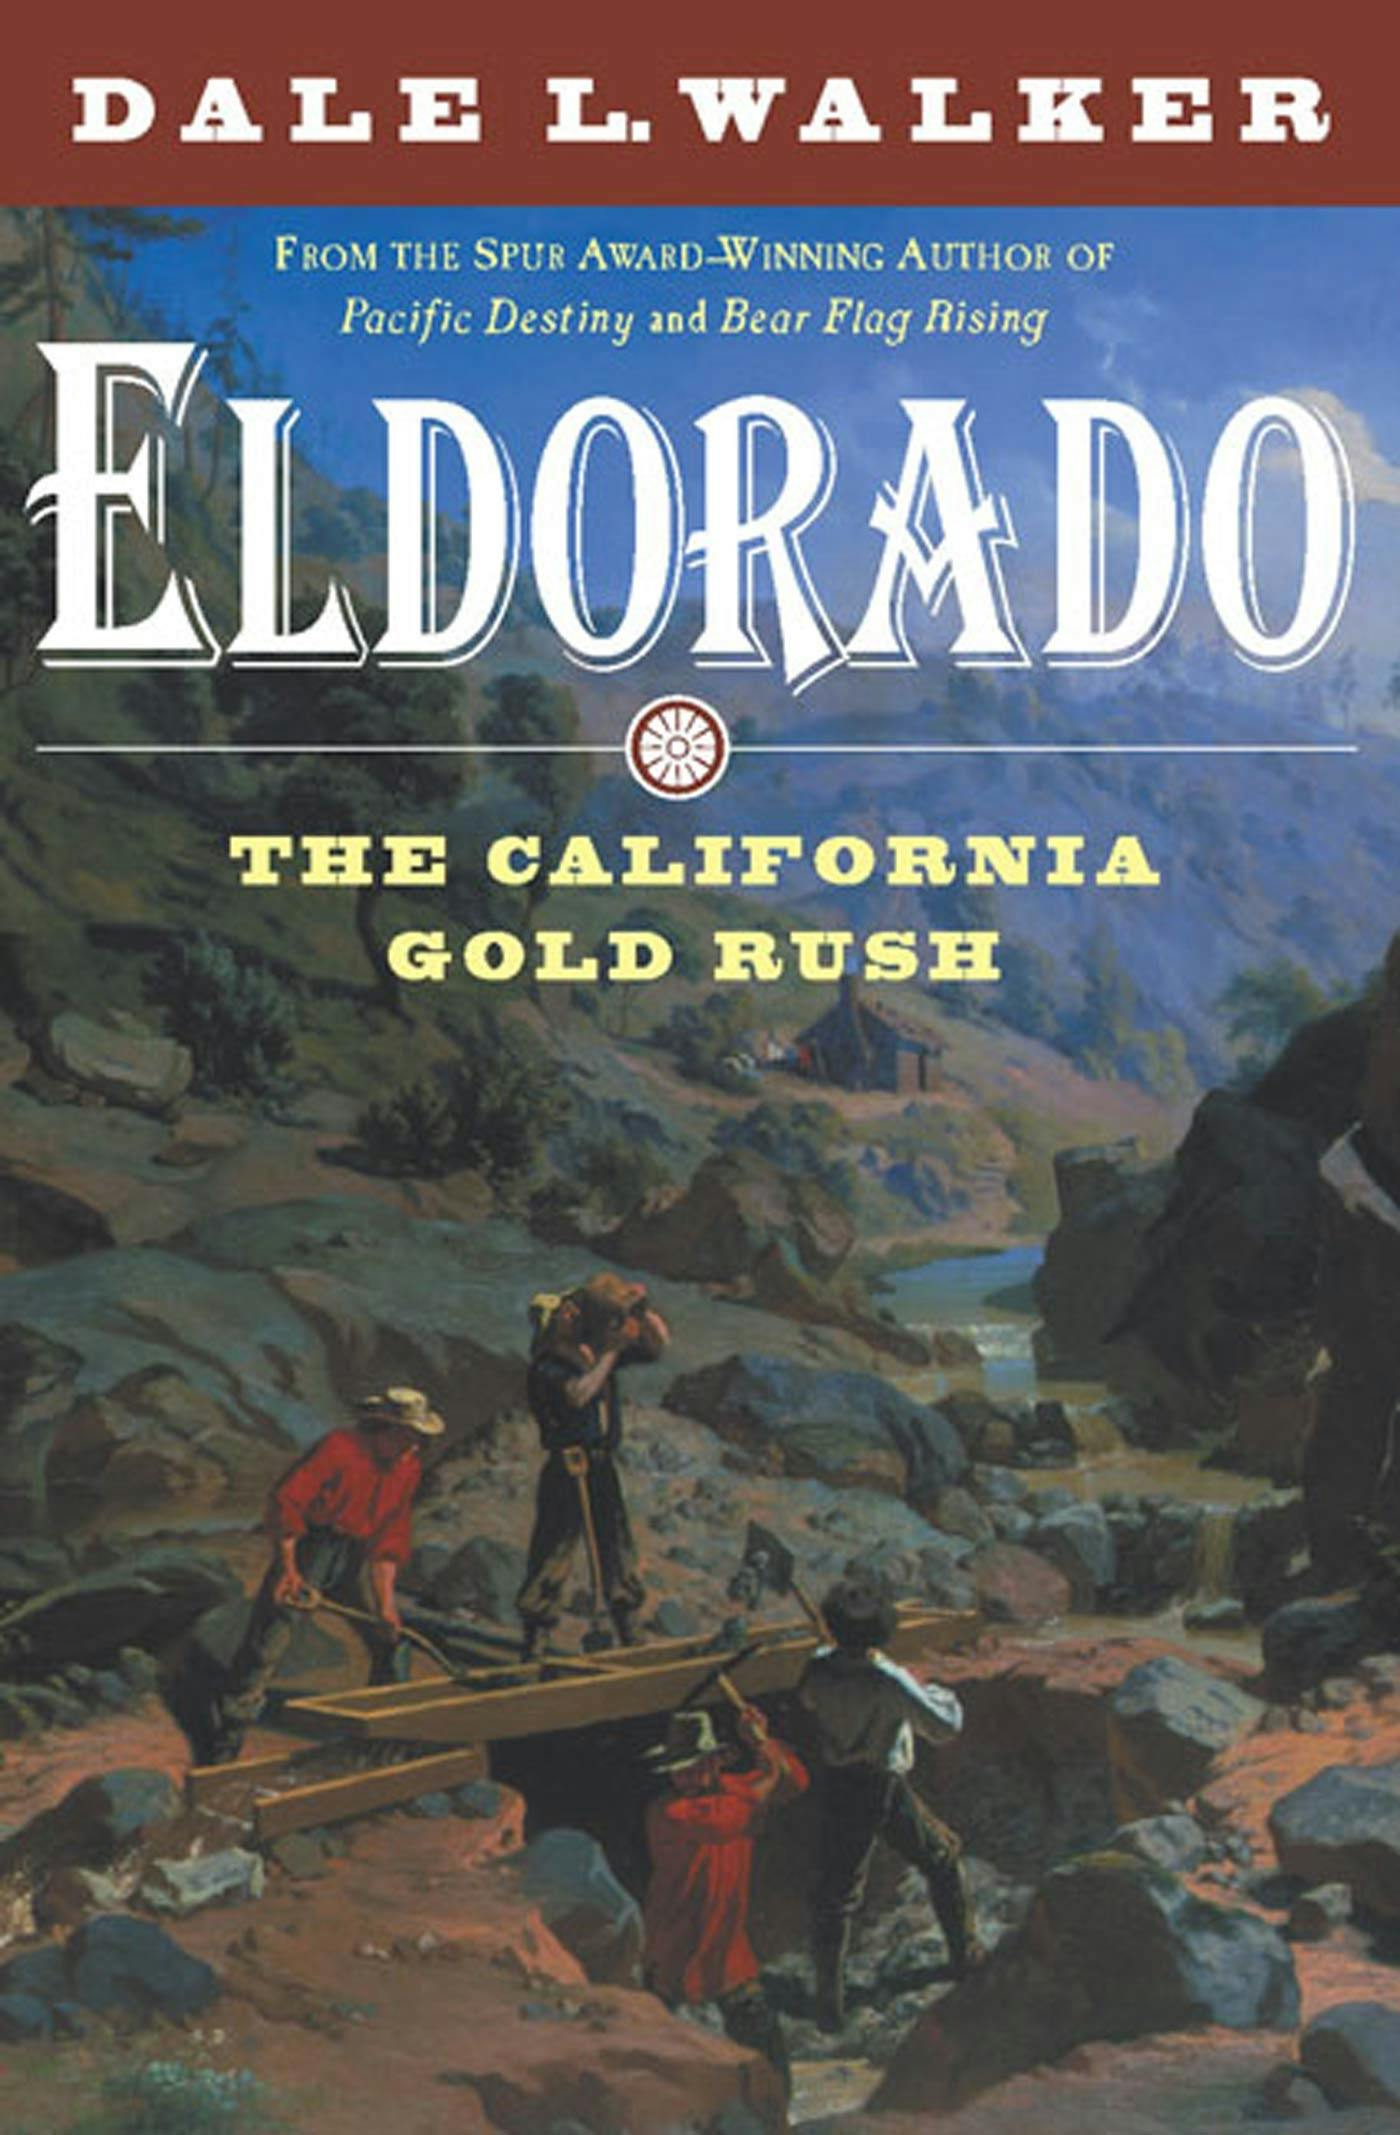 Cover for the book titled as: Eldorado